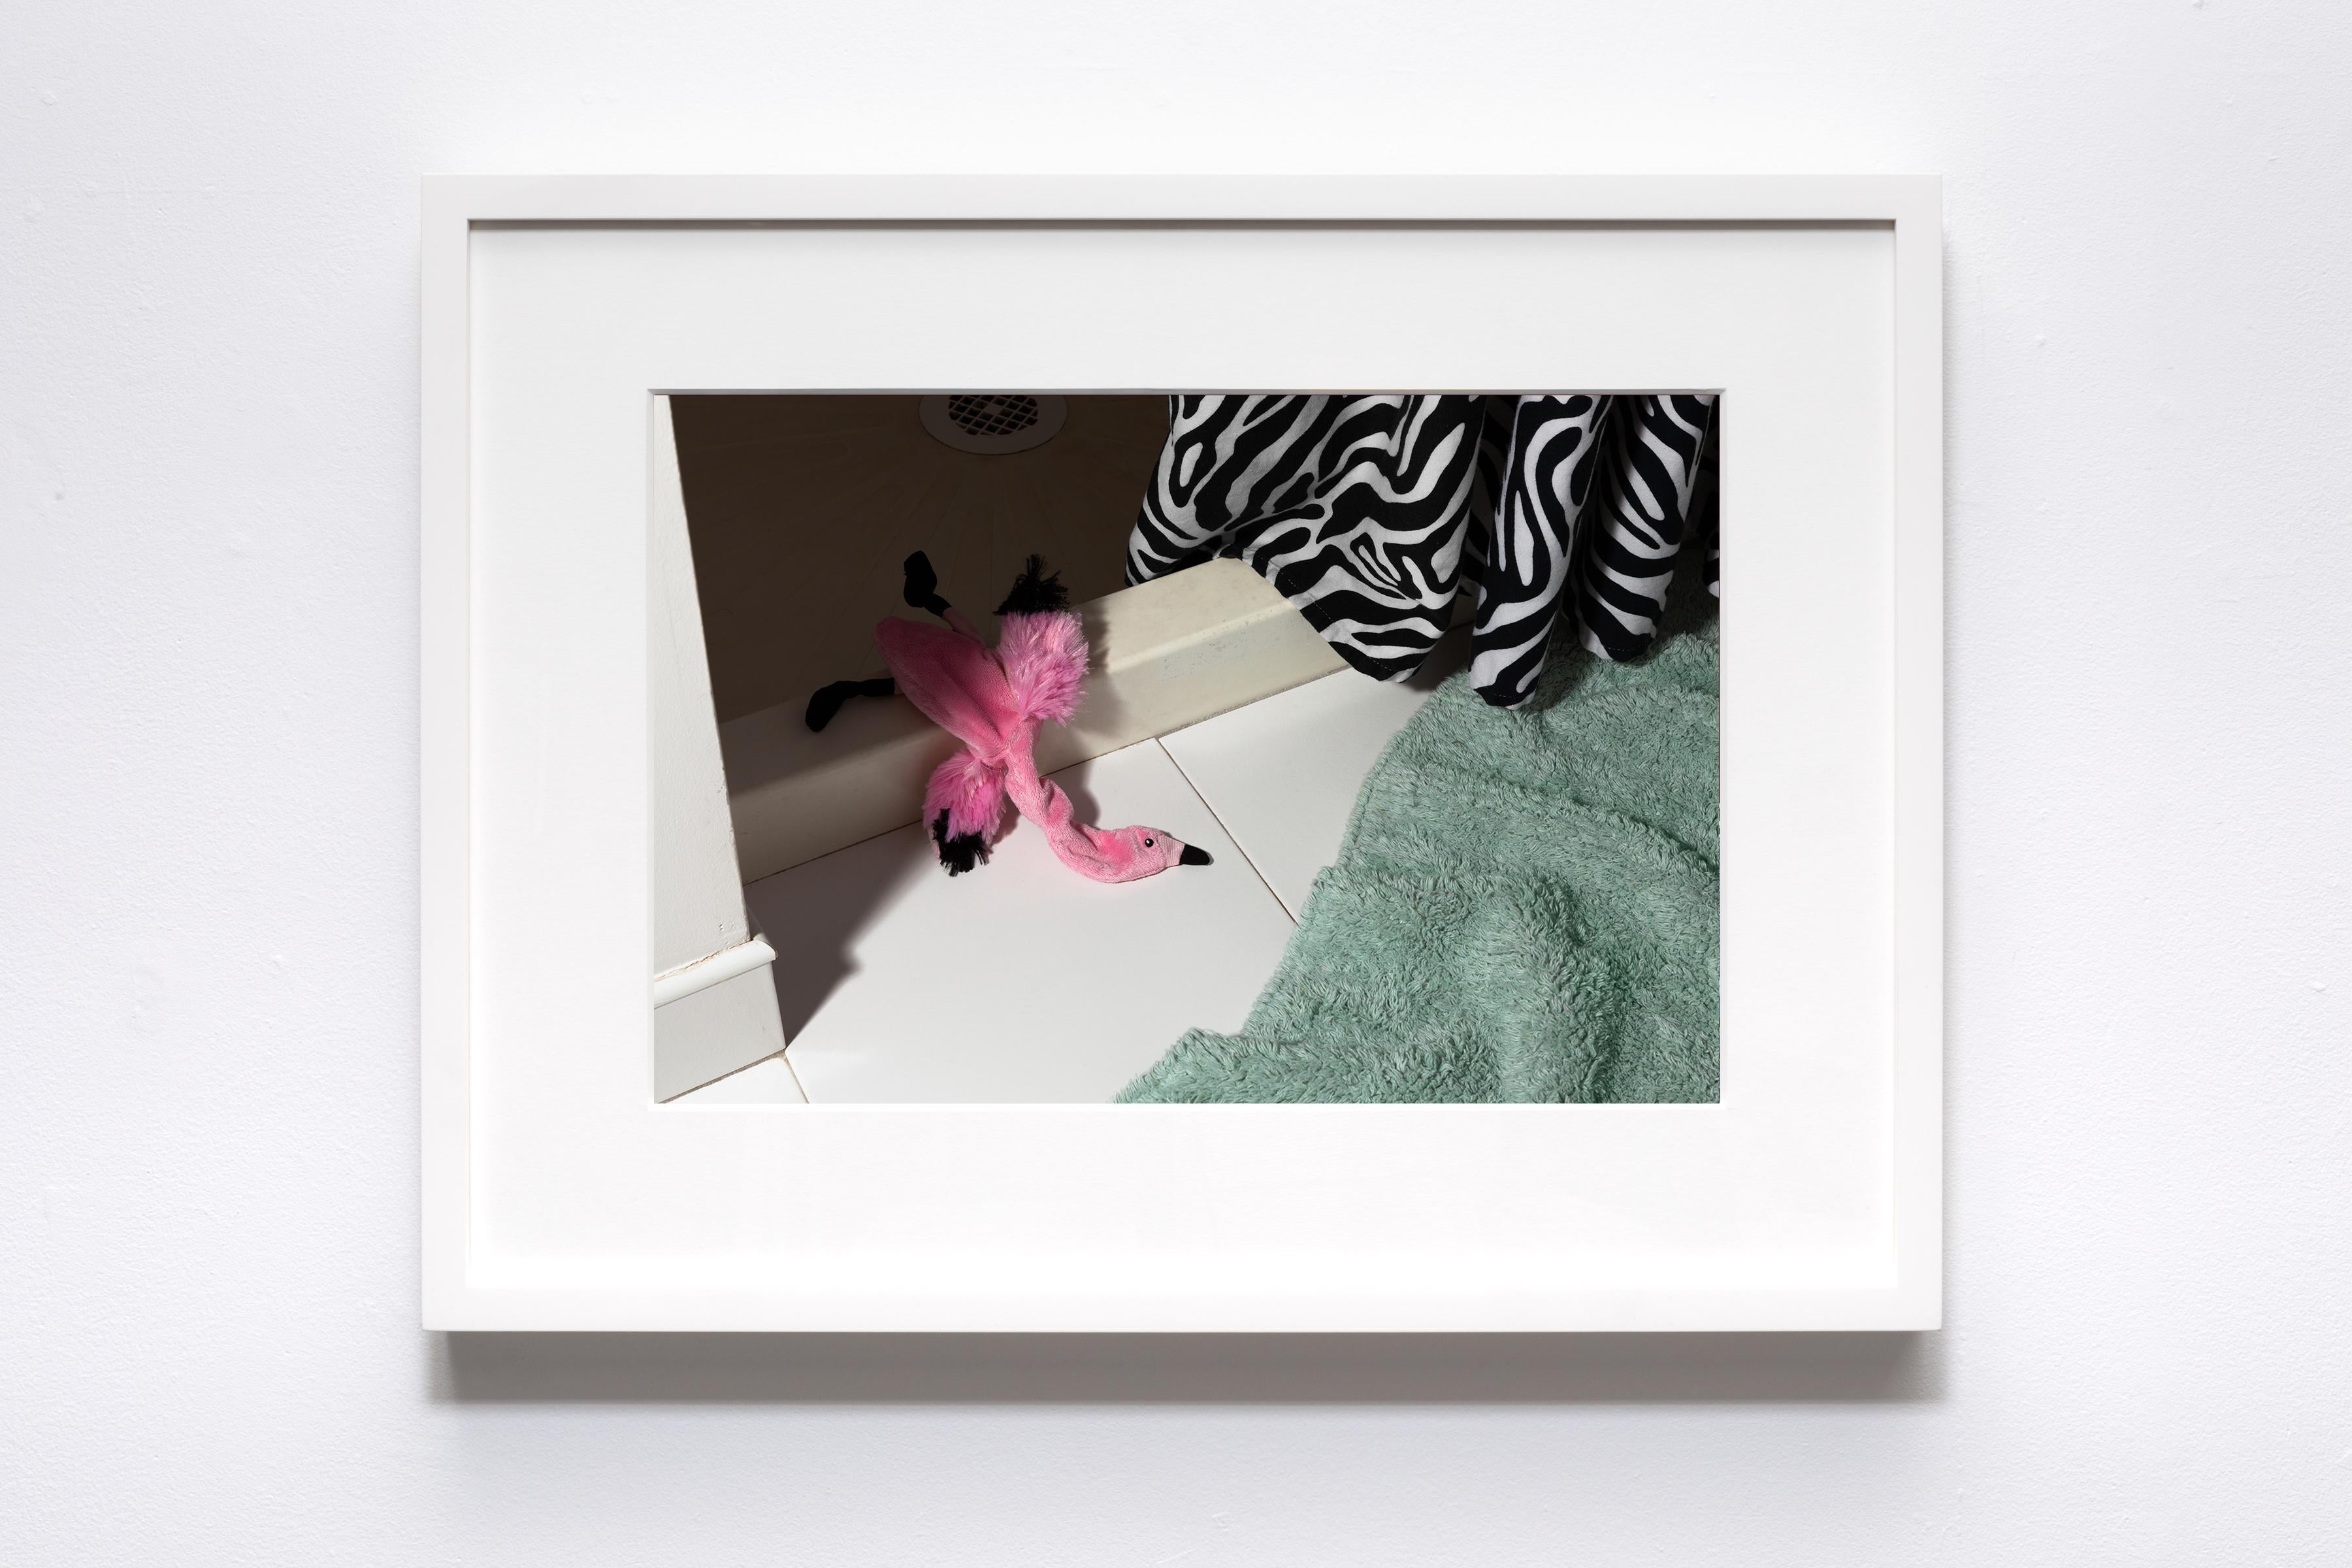 Morbidity & Mortality: Flamingo Humorvolle Fotografie von Hundespielzeug in Krimsszene (Zeitgenössisch), Photograph, von Jeanette May